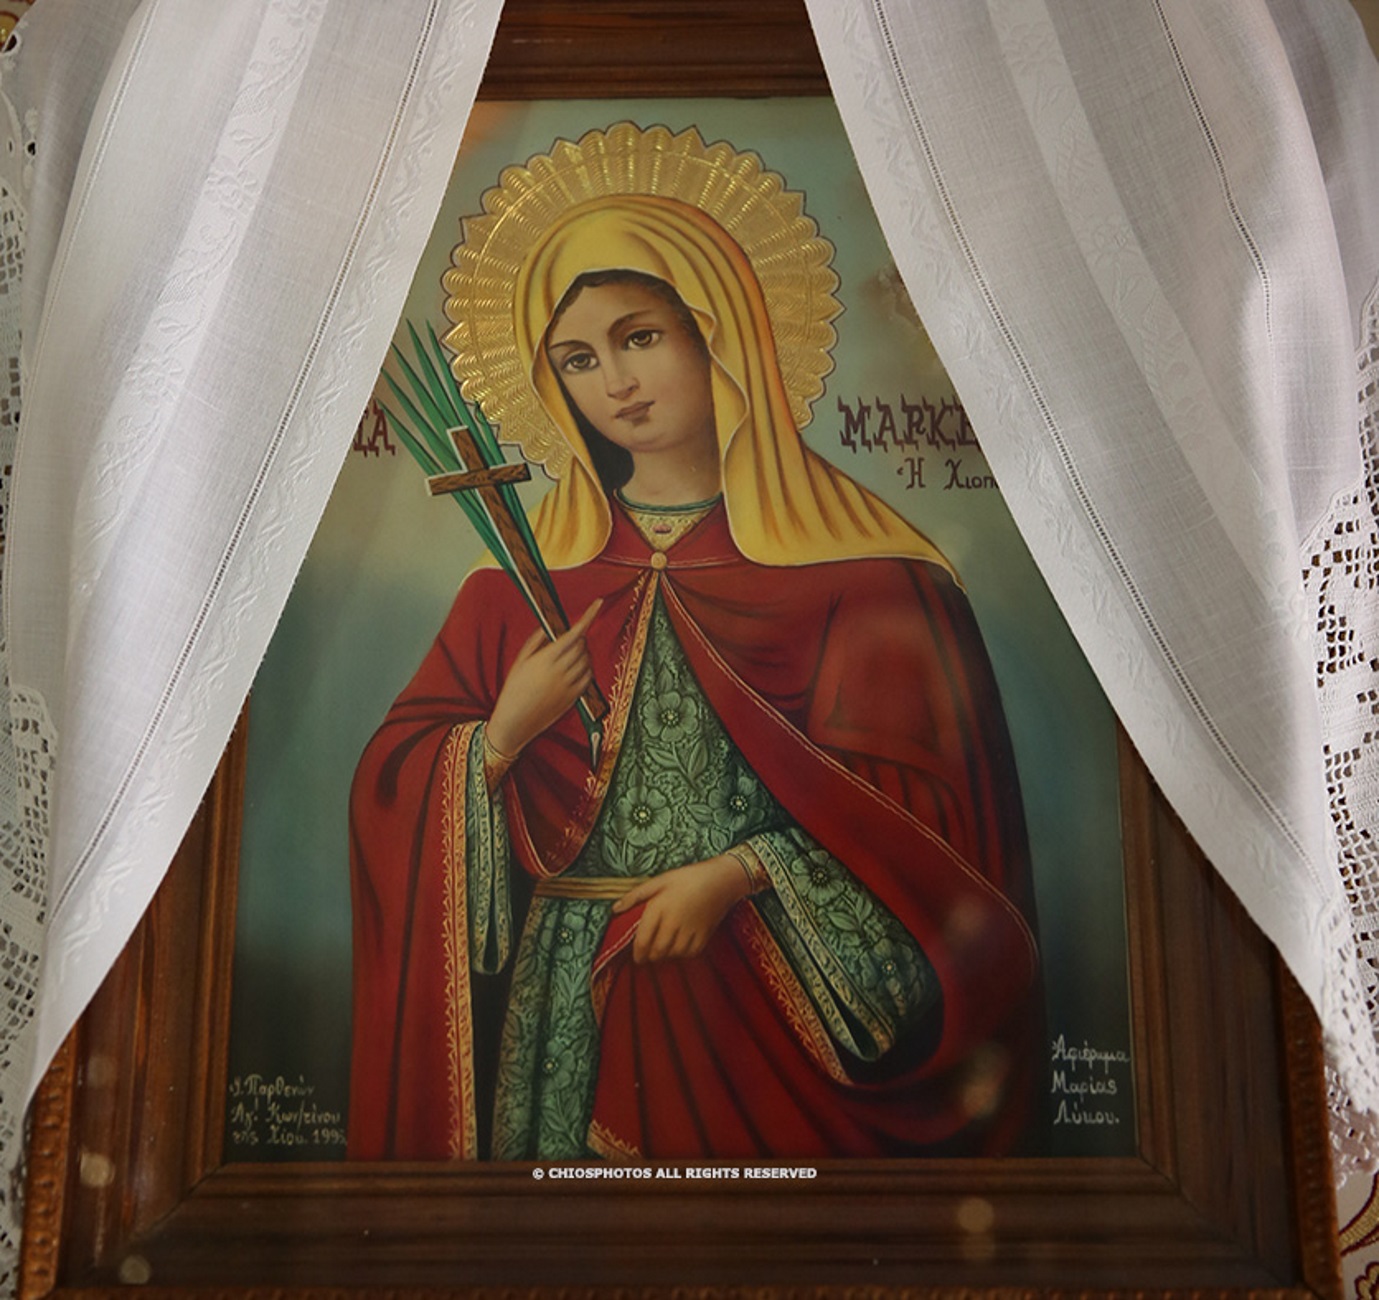 Χίος: Τιμούν την πολιούχο Αγία Μαρκέλλα! Η συγκλονιστική ιστορία πίσω από αυτή τη φωτογραφία (Βίντεο)